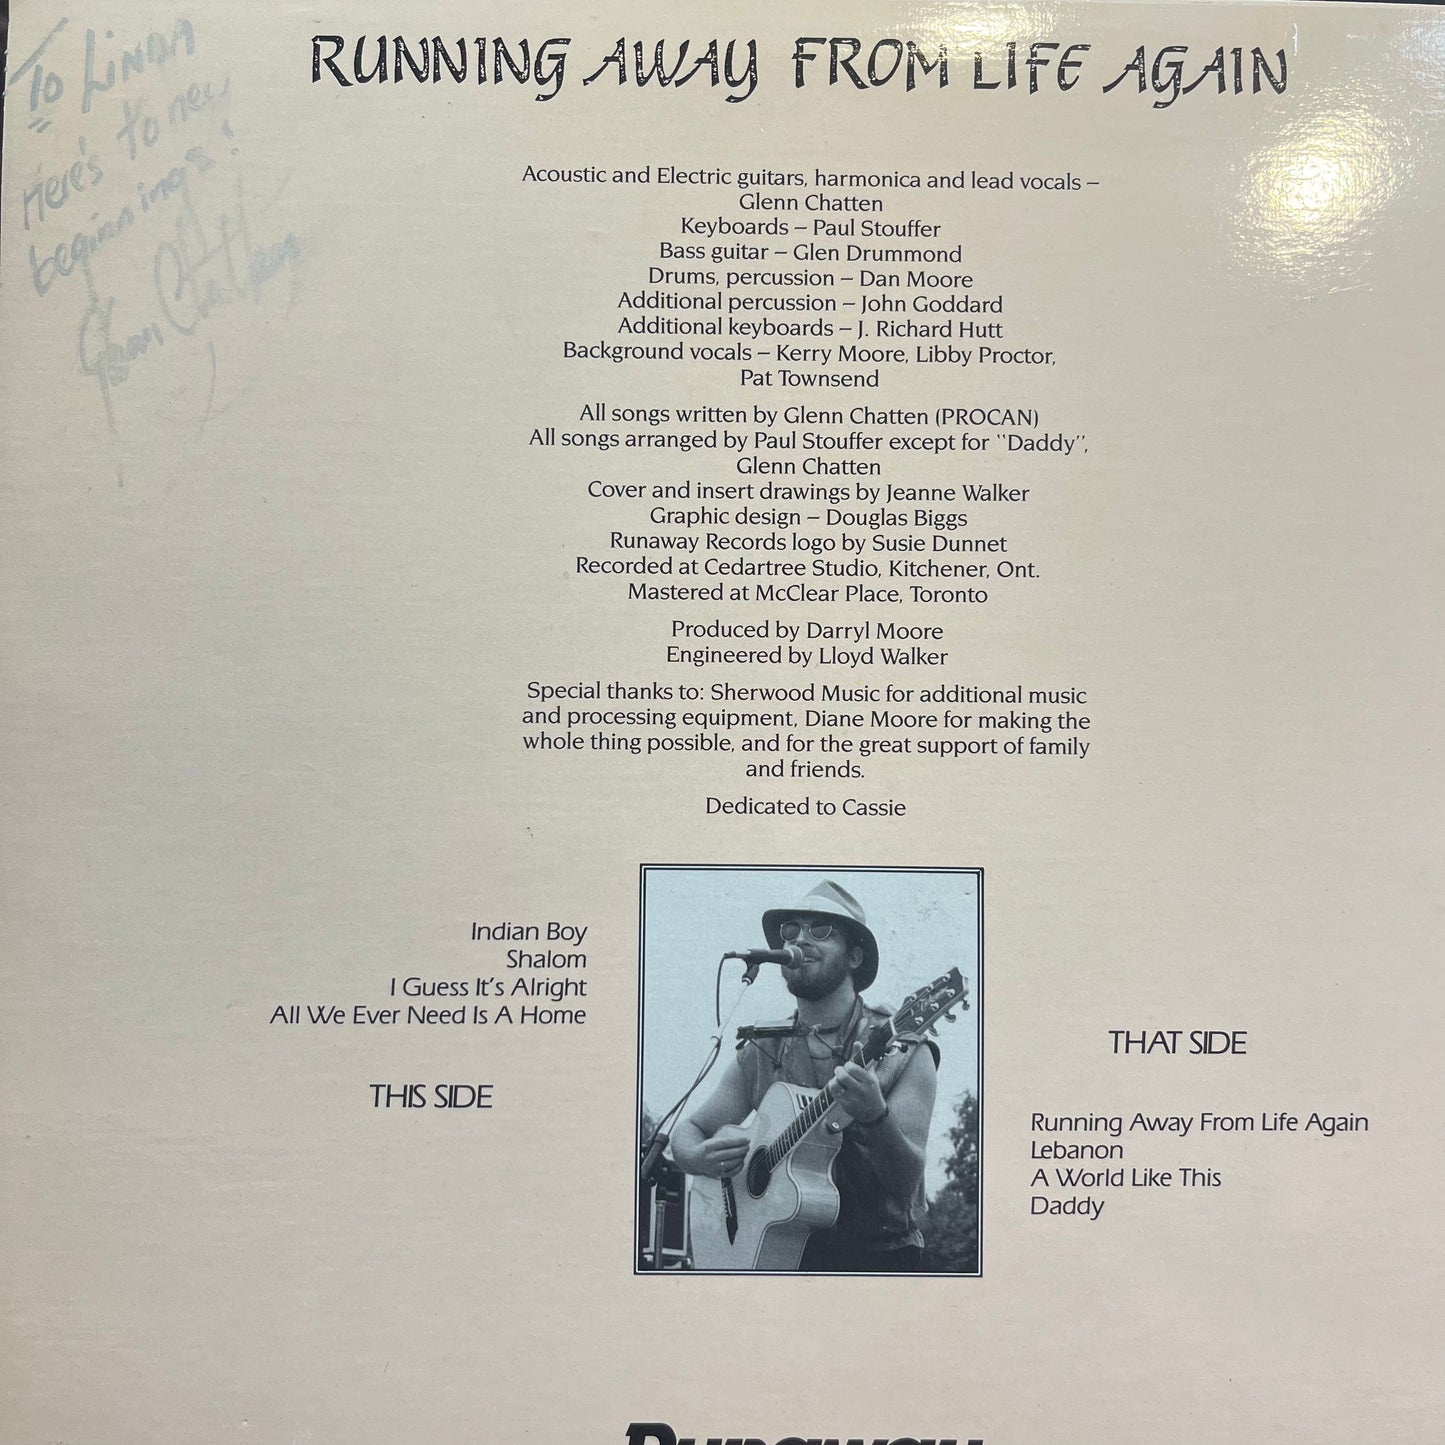 Glenn Chatten - Running Away From Life Again (Used LP)